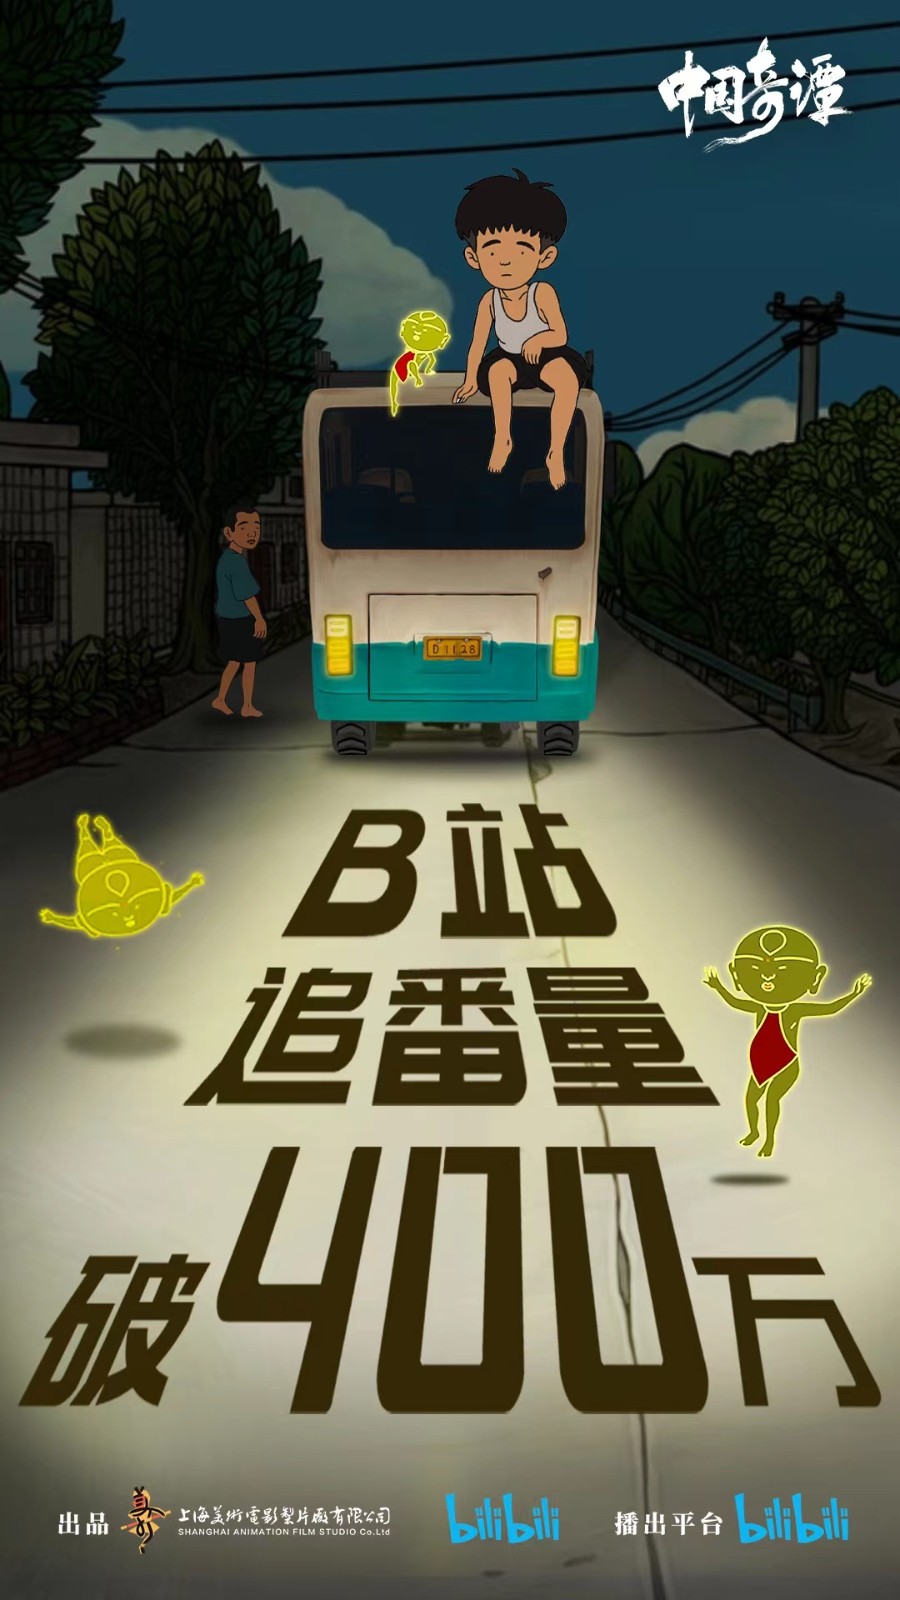 《中国奇谭》第四集现已上线 B站追番量破400万